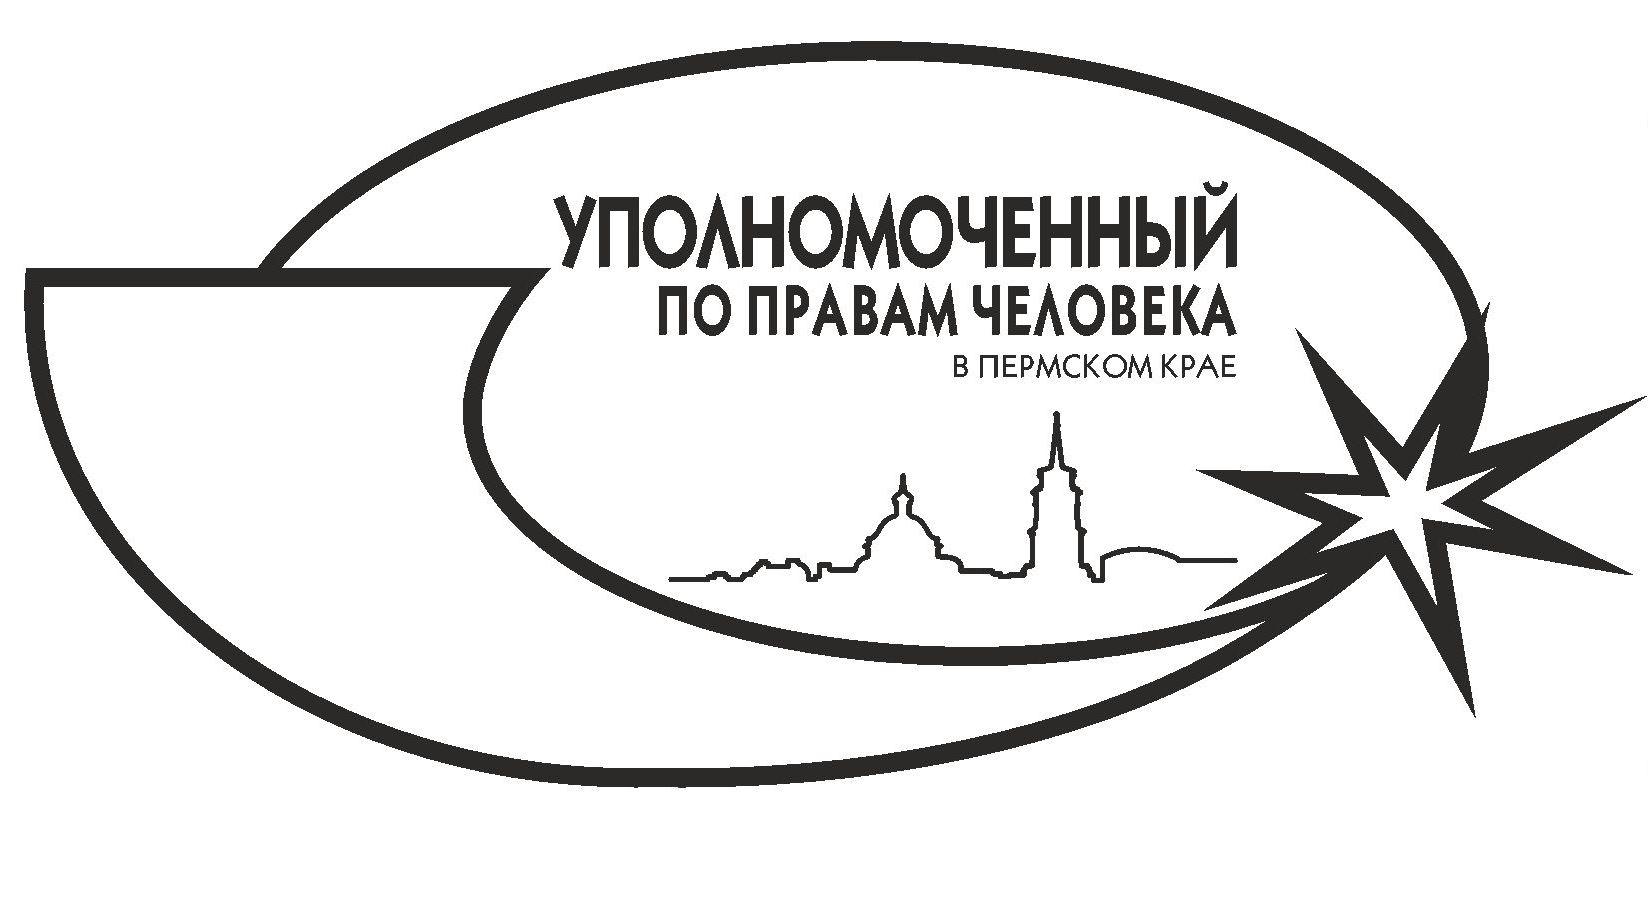 Омбудсмен Павел Миков поздравляет с Международным днем прав человека, который отмечается 10 декабря